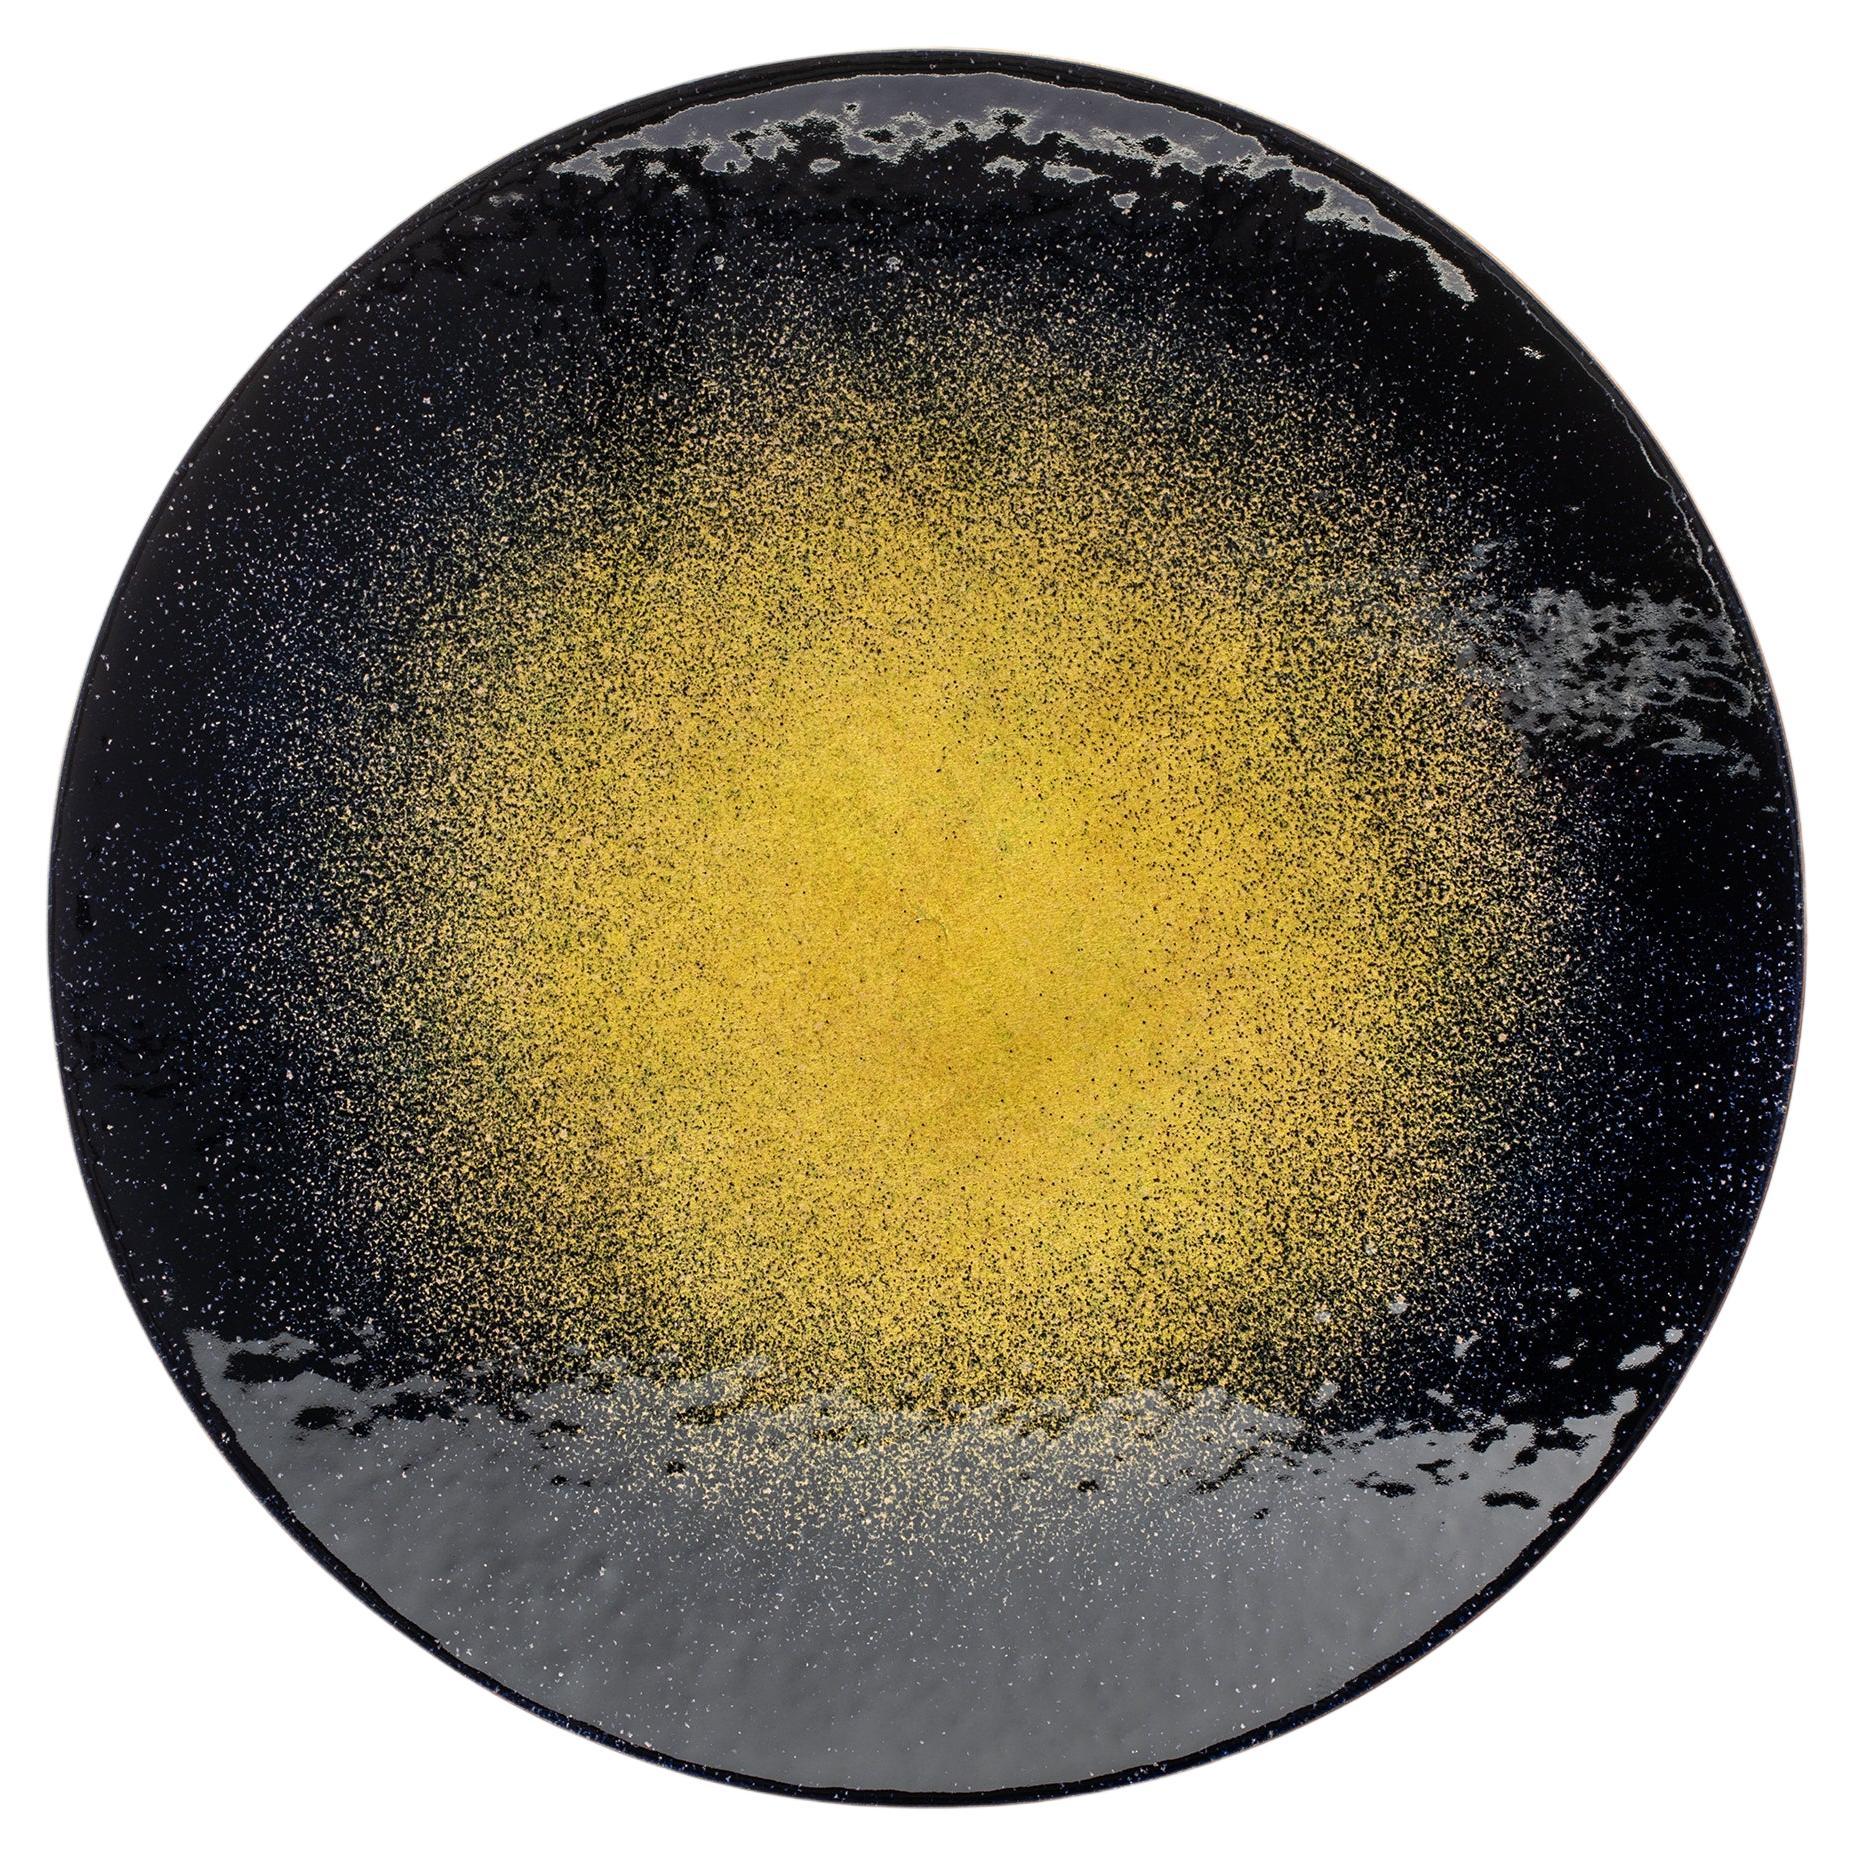 Die von Incalmi und Zanellato/Bortotto geschaffenen Stücke - die von der astronomischen Forschung inspirierte Kollektion Specola, zu der Teller, Lampen, Griffe, Kleiderbügel und Wandleuchter gehören - zeichnen sich durch abstrakte Farbexplosionen